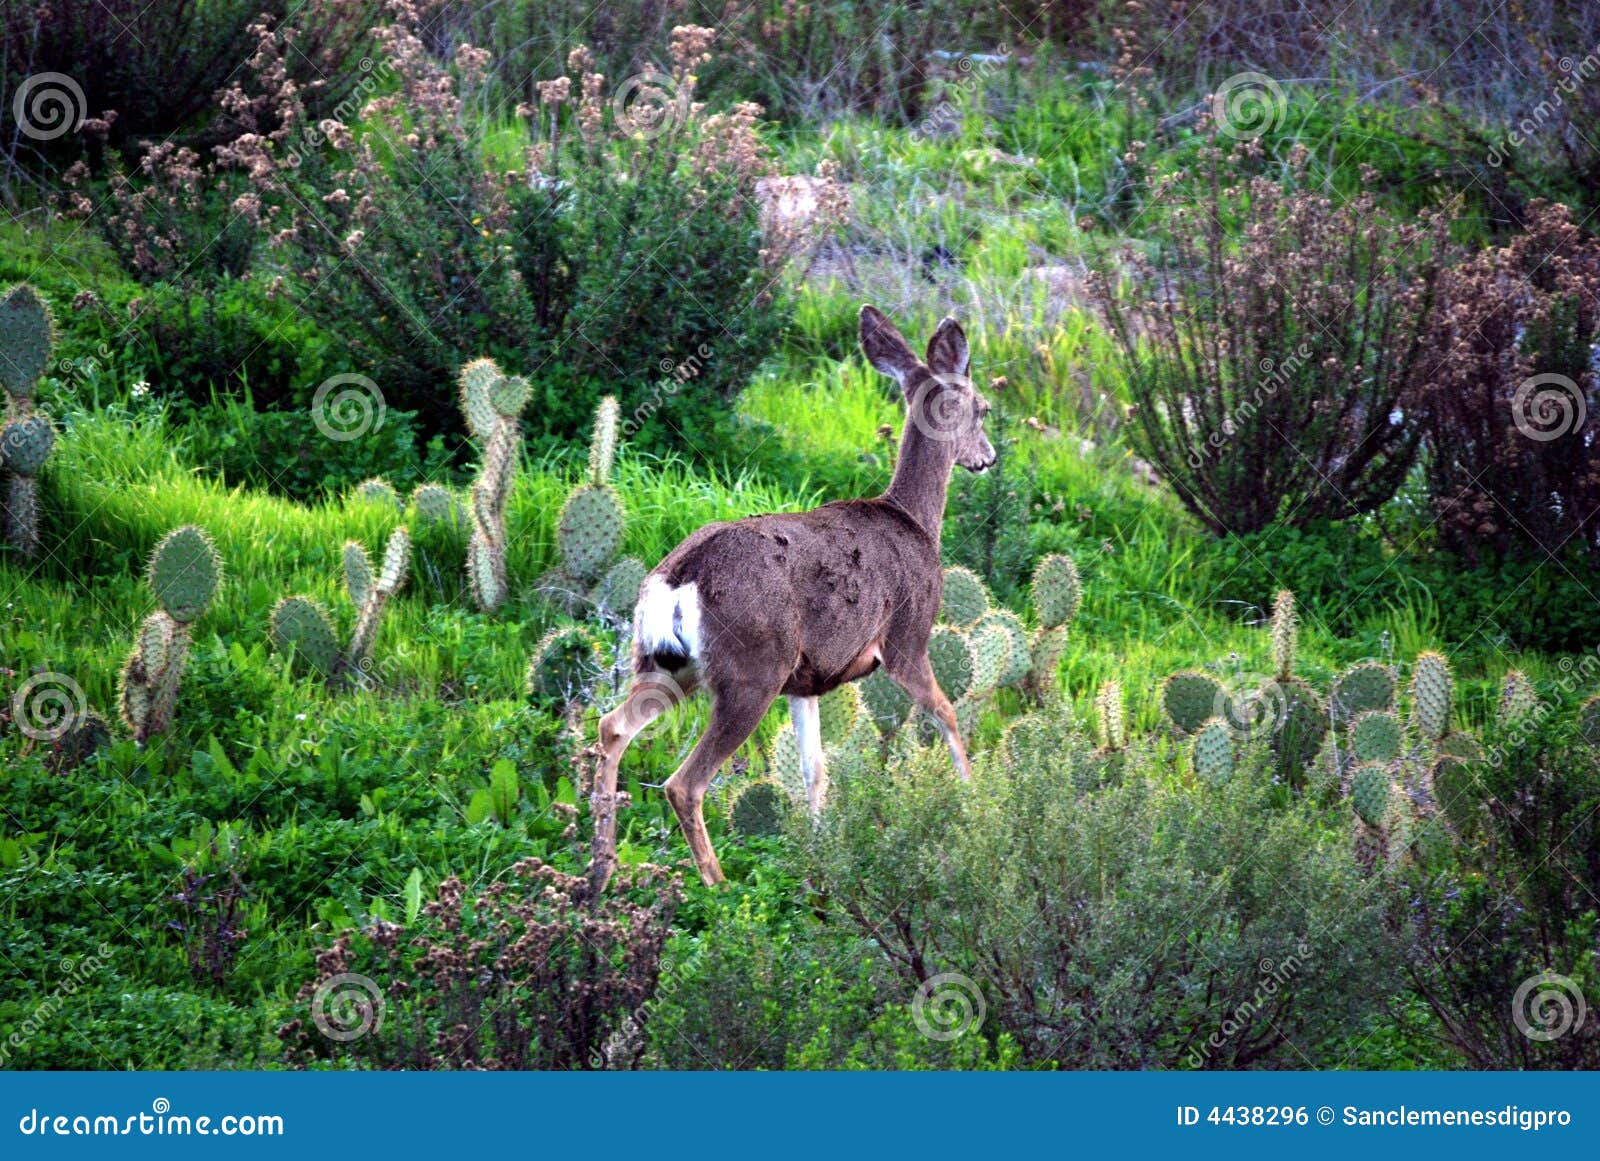 deer natural habitat 4438296